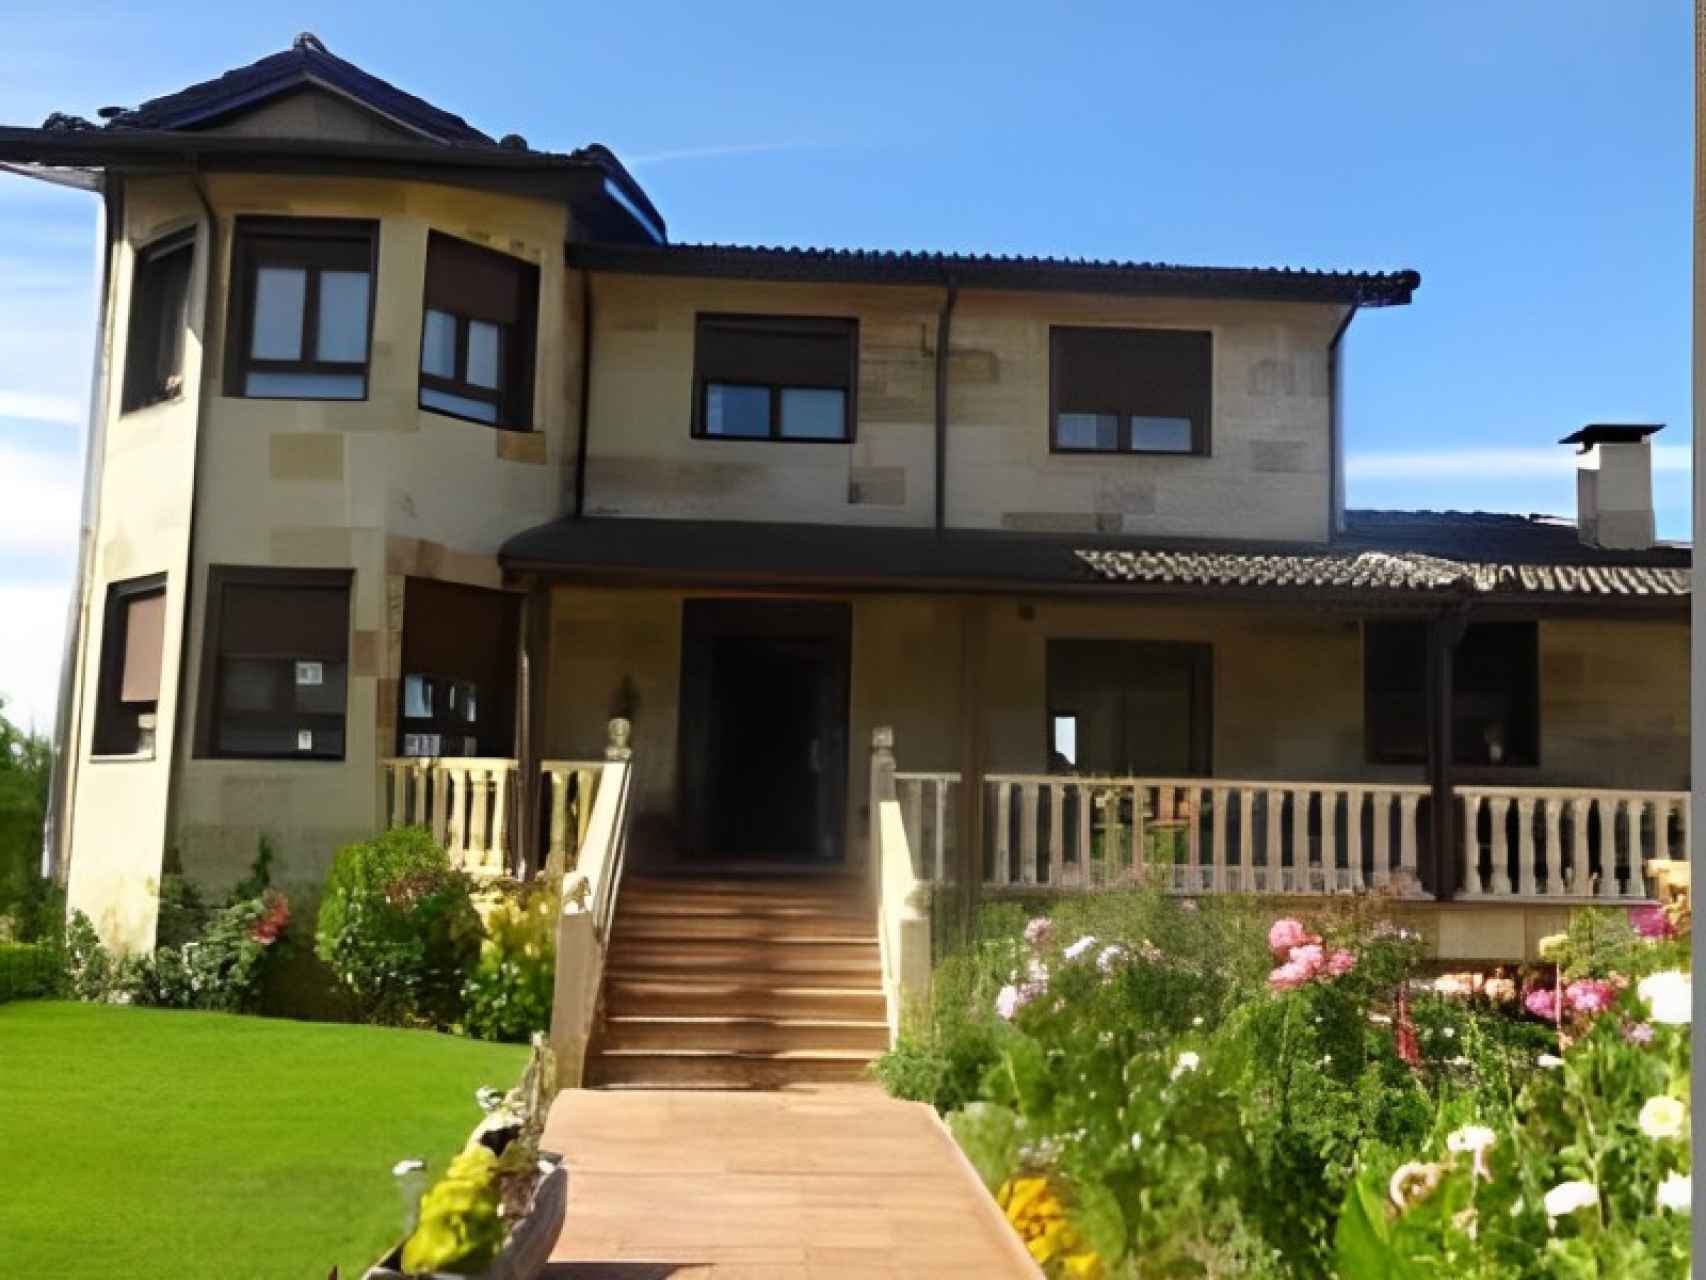 Casa individual con jardín en el municipio soriano de Almazán